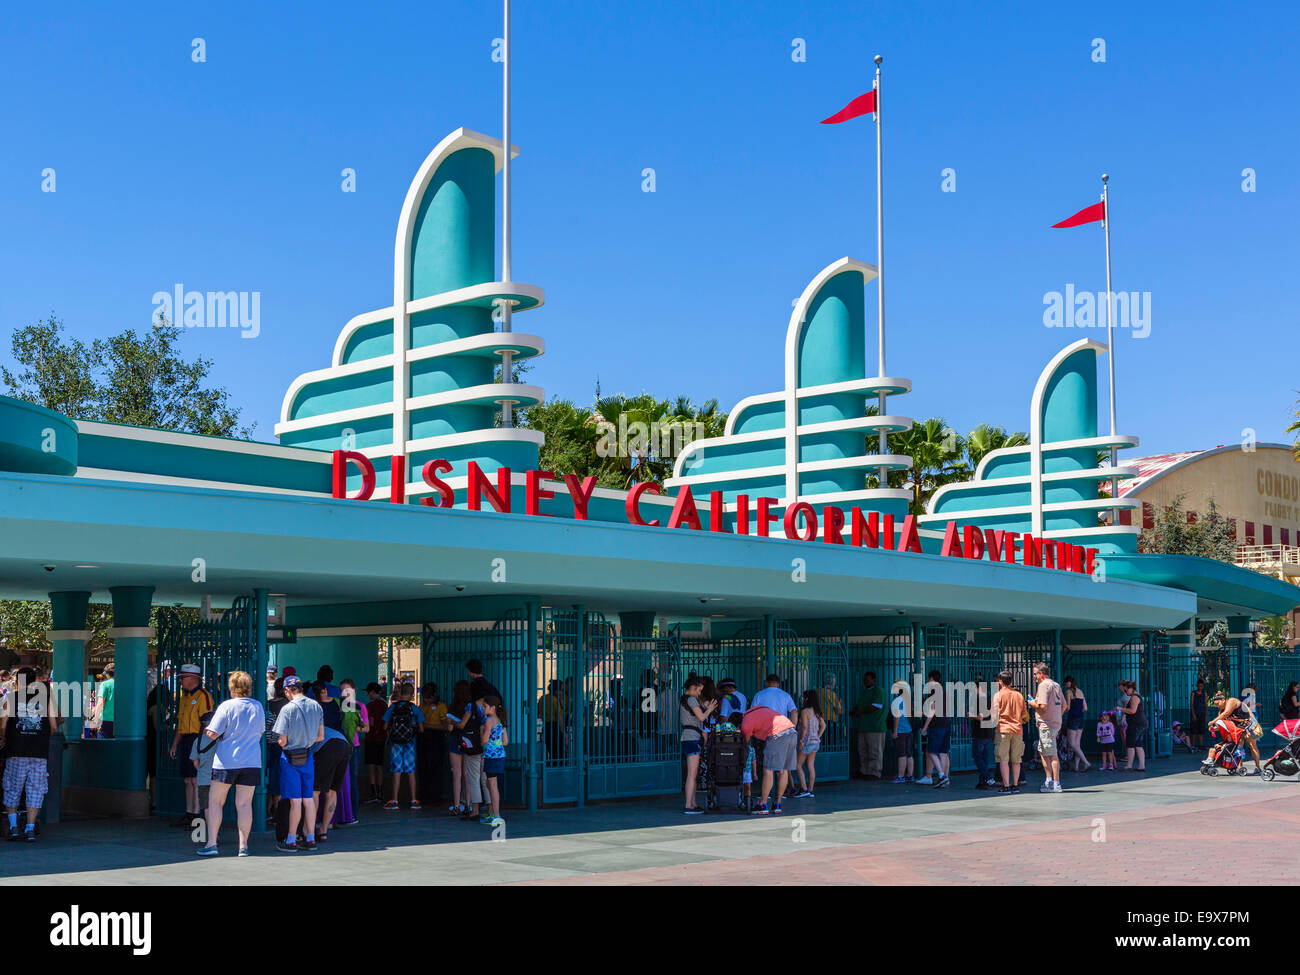 Drehkreuze am Eingang zum Disney California Adventure, Disneyland, Anaheim, Orange County, in der Nähe von Los Angeles, Kalifornien, USA Stockfoto